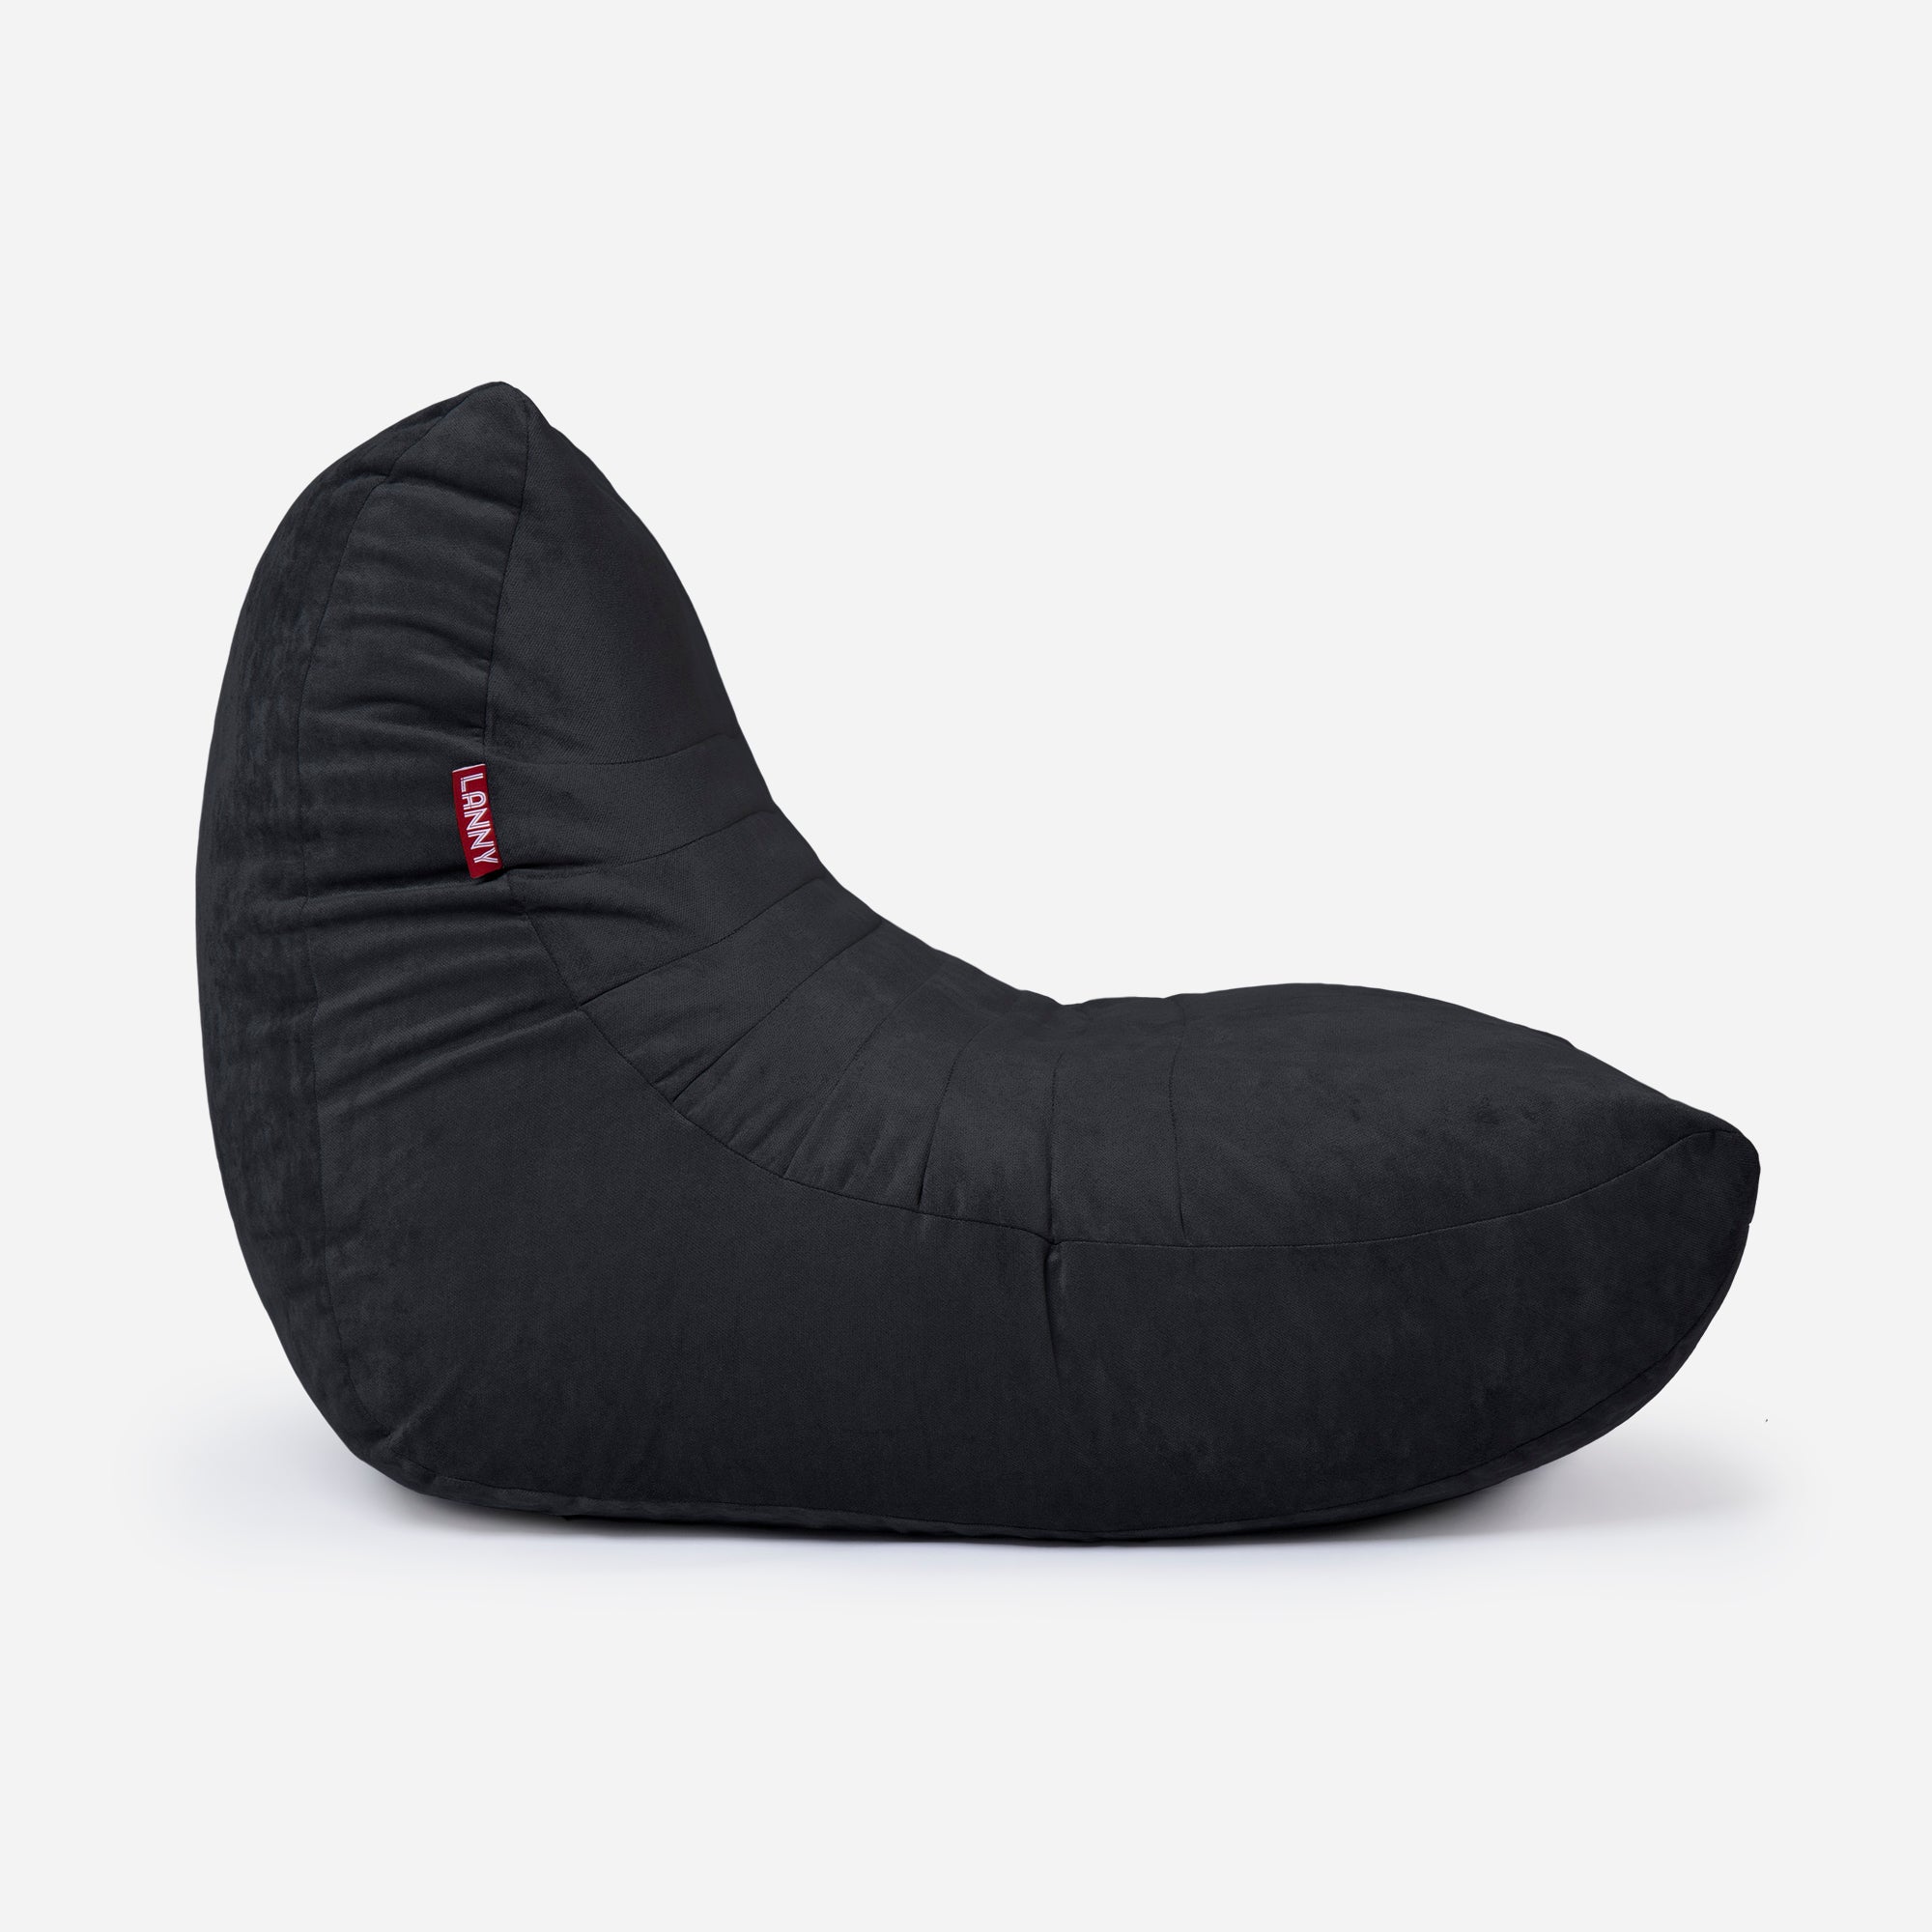 Curvy Aldo Black Bean Bag Chair